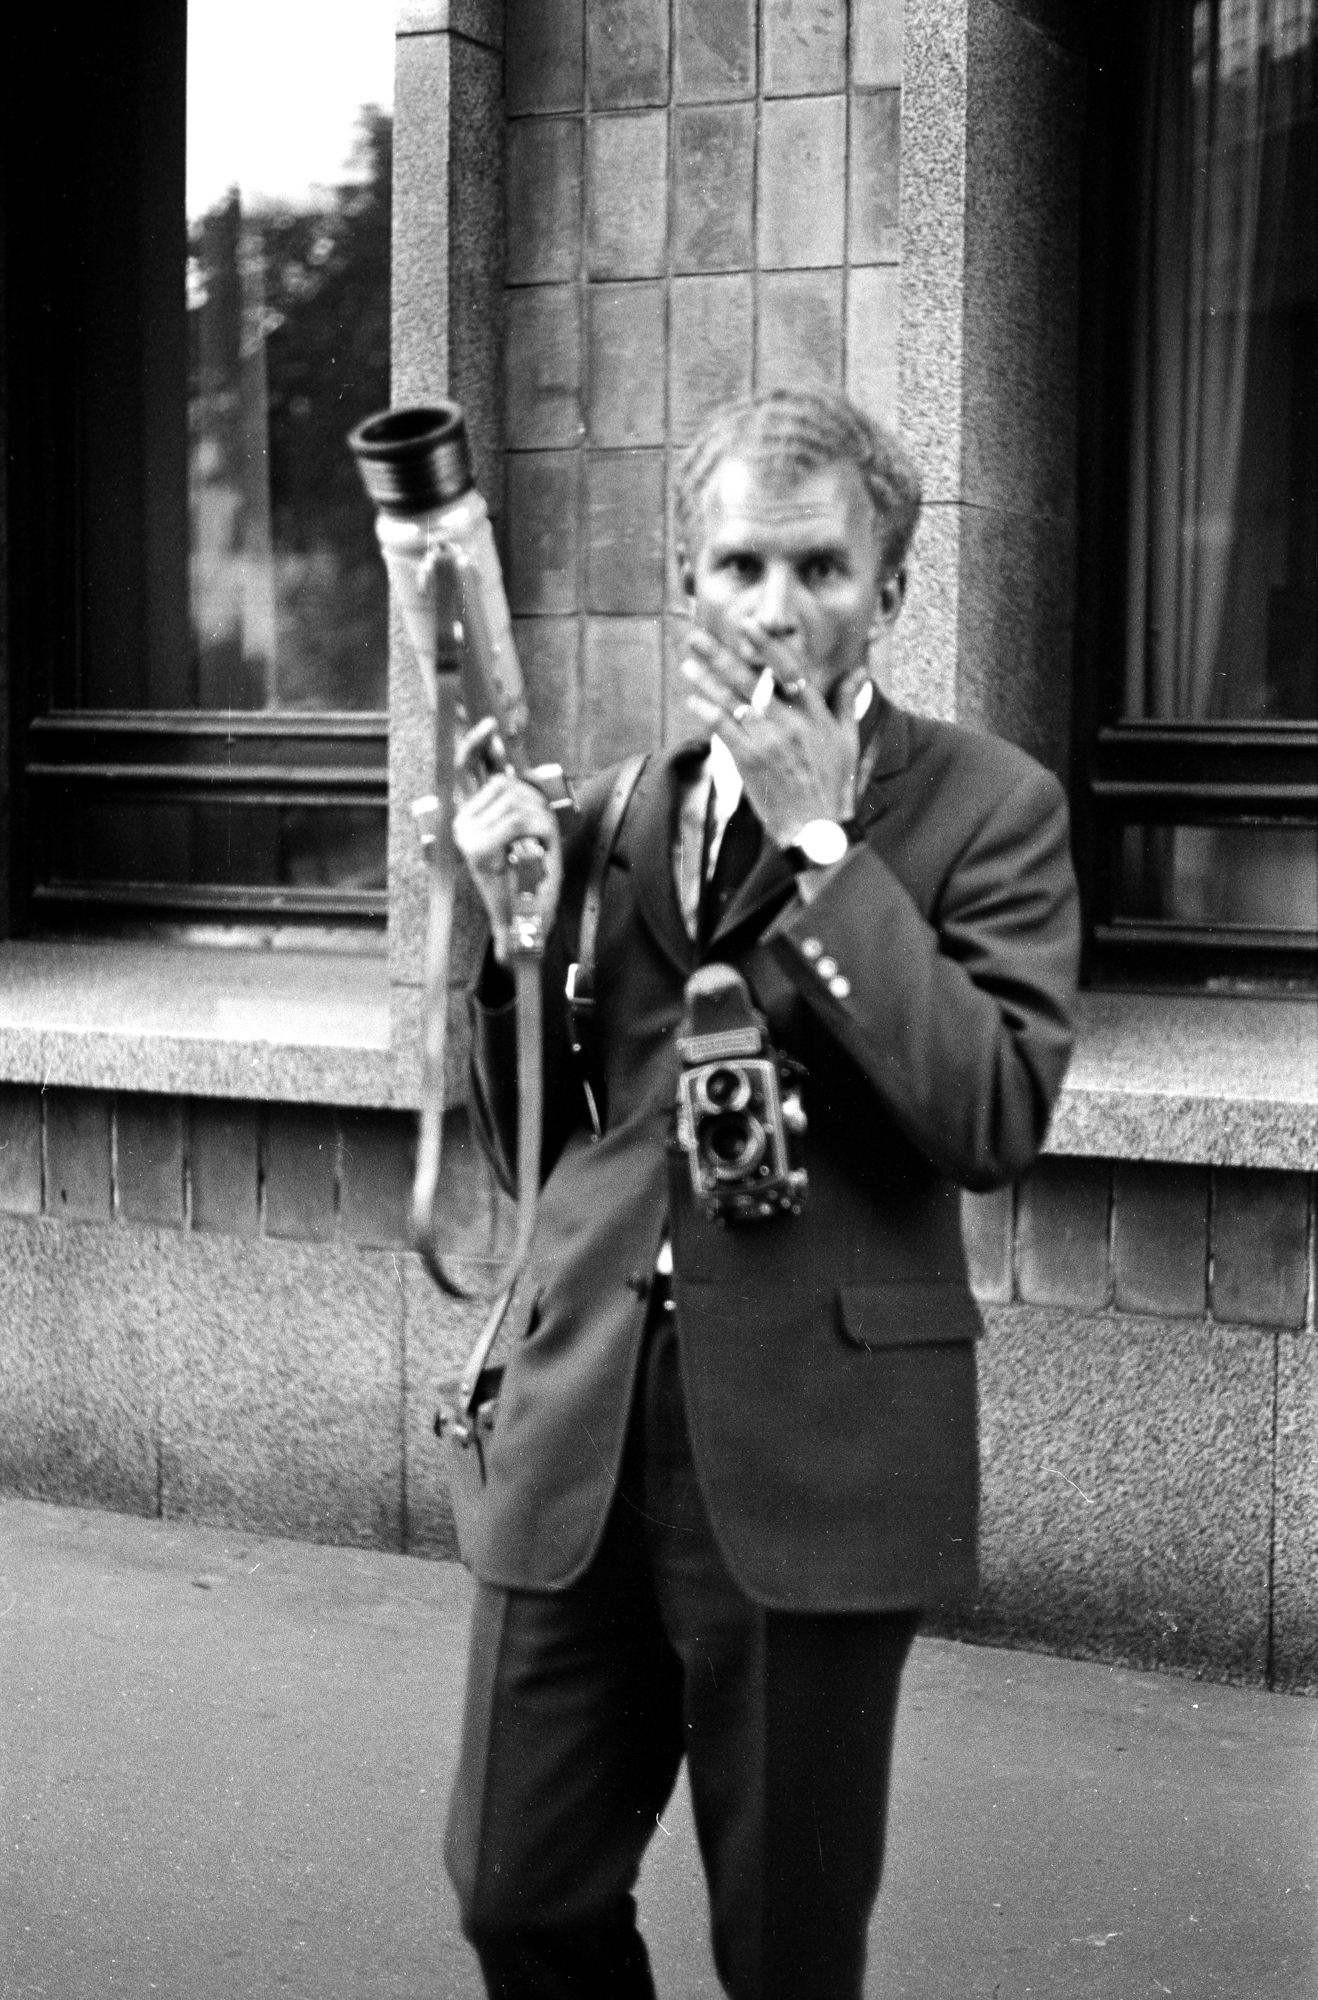 Mustavalkoisessa kuvassa tummaan pukuun pukeutunut mies seisoo jalkakäytävällä rakennuksen edessä, polttaa tupakkaa ja katsoo suoraan kameraan. Hänen kaulastaan roikkuu filmikamera, ja toisessa kädessä hänellä on iso, putkimainen Photosniper-kamera. 